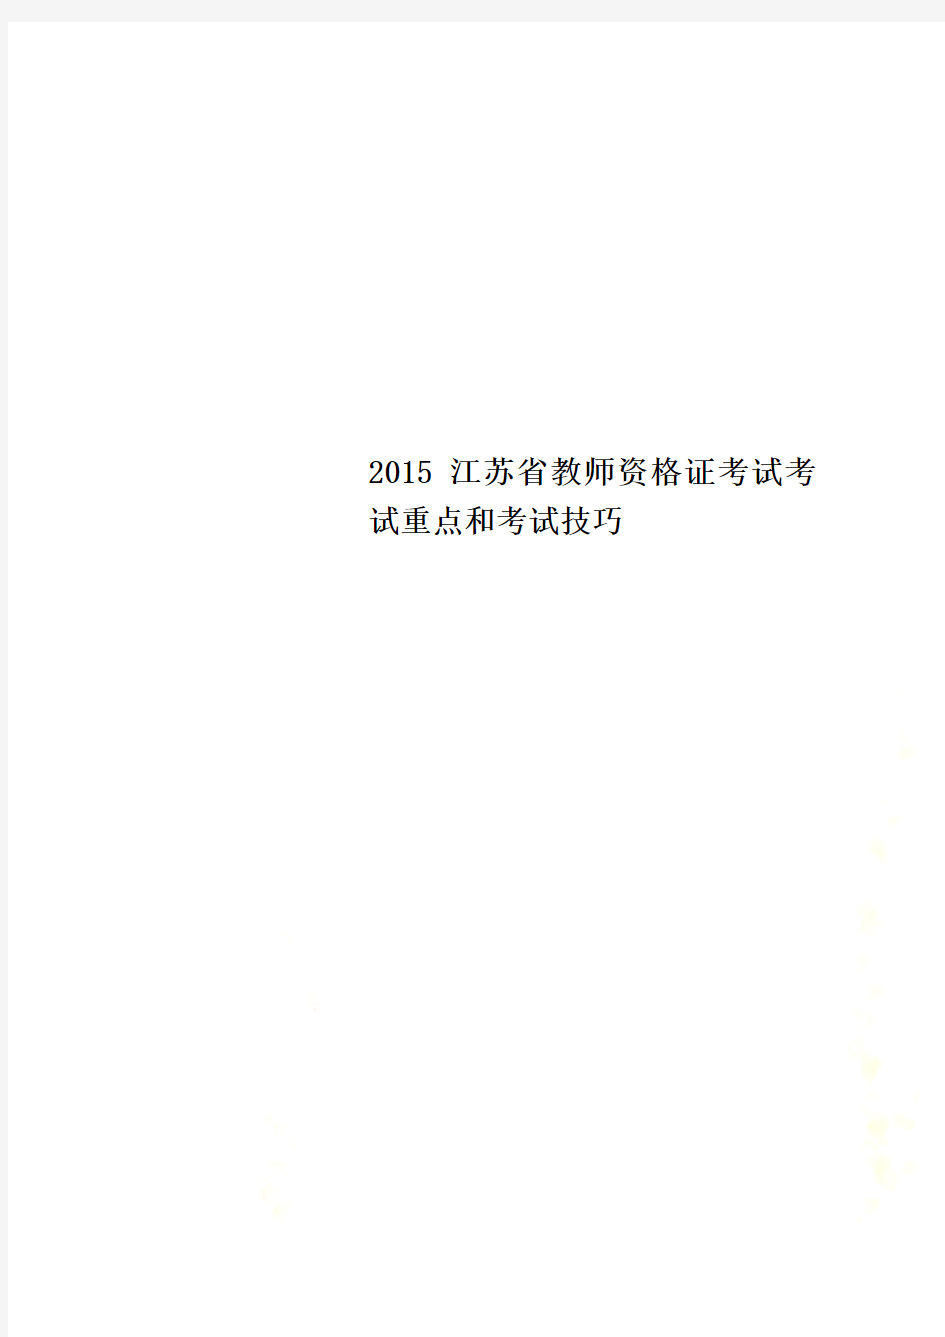 2015江苏省教师资格证考试考试重点和考试技巧